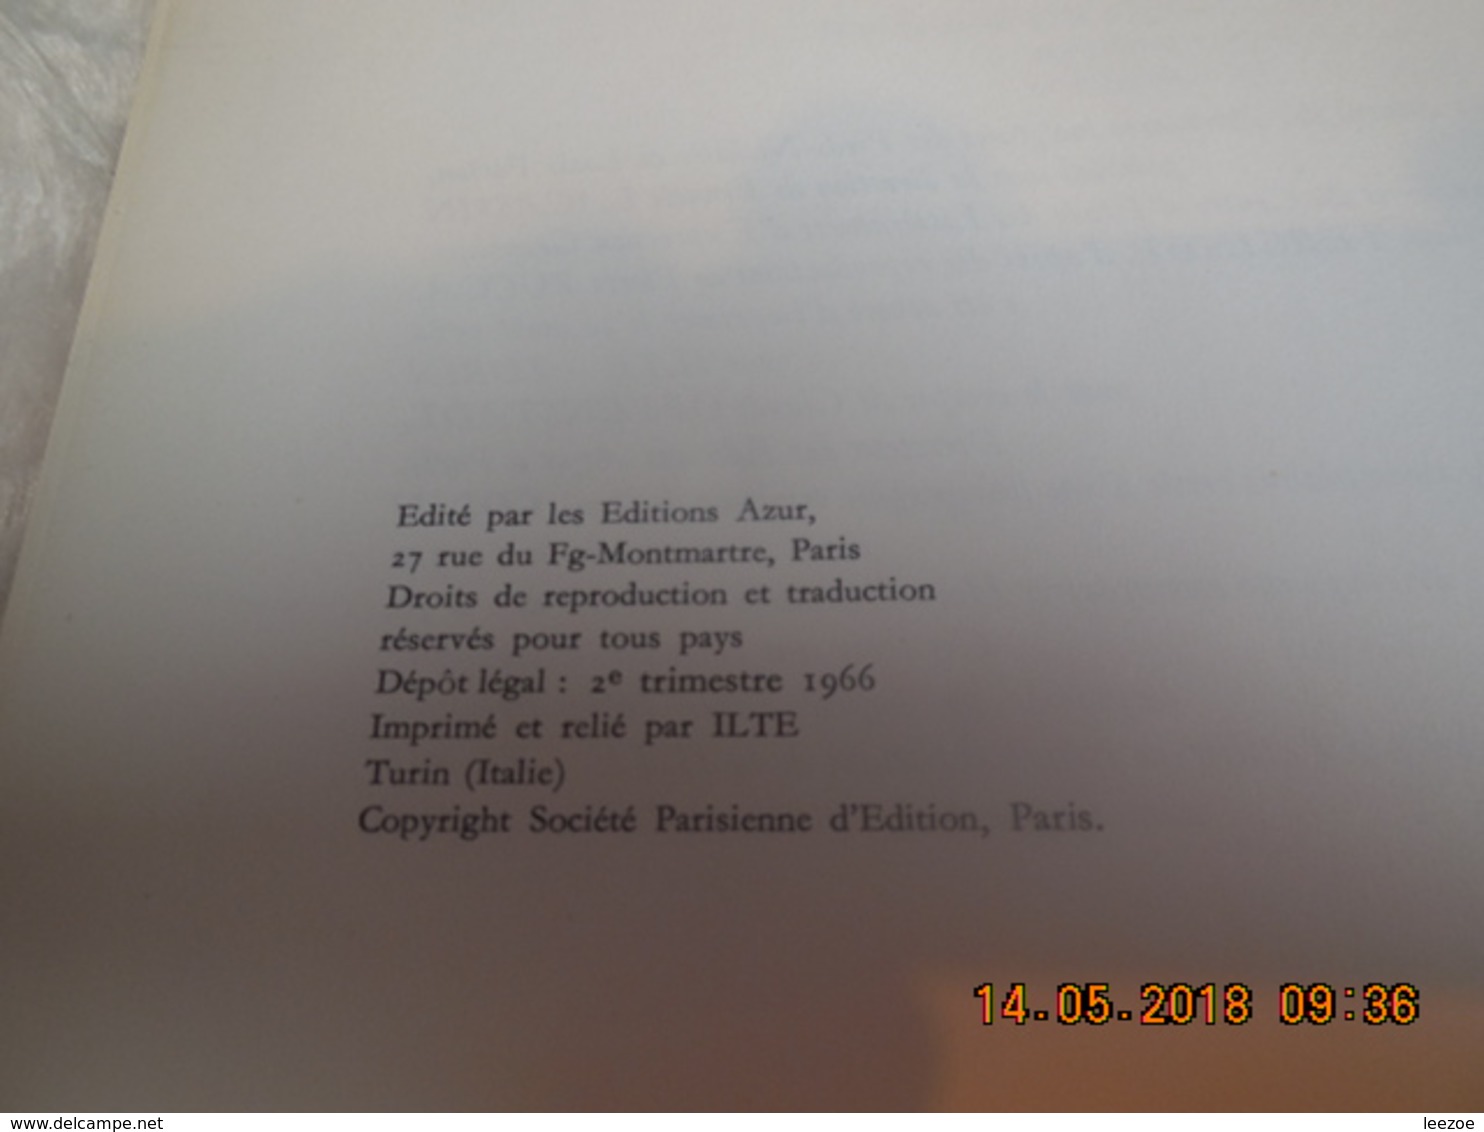 L'EPATANT LES PIEDS-NICKELES S'EN VONT EN GUERRE 1966